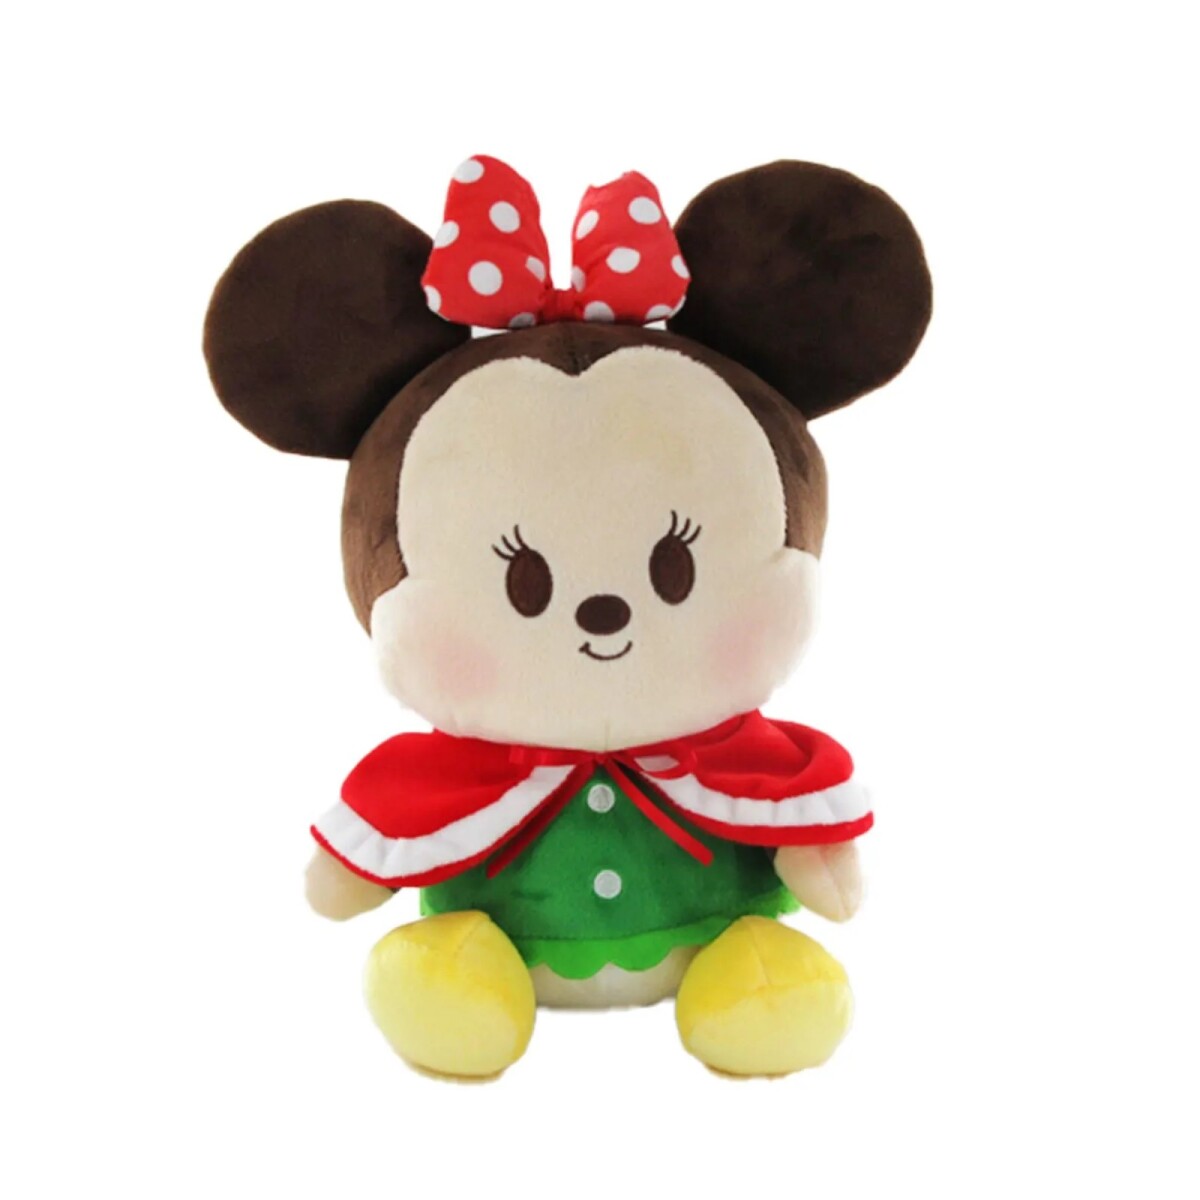 Peluche Disney navidad - Minnie 